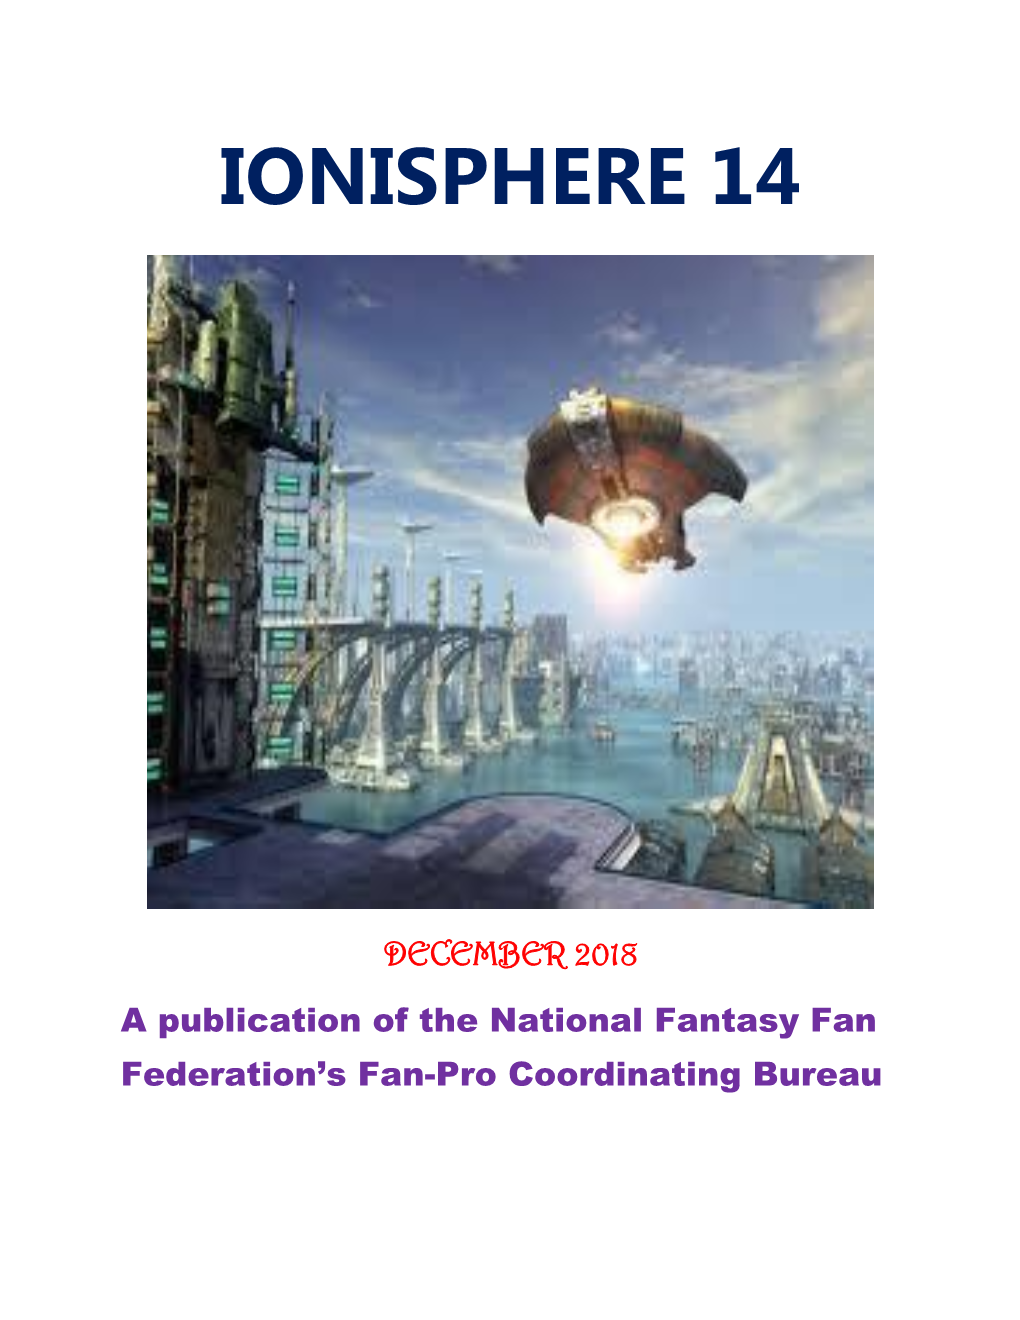 Ionisphere 14